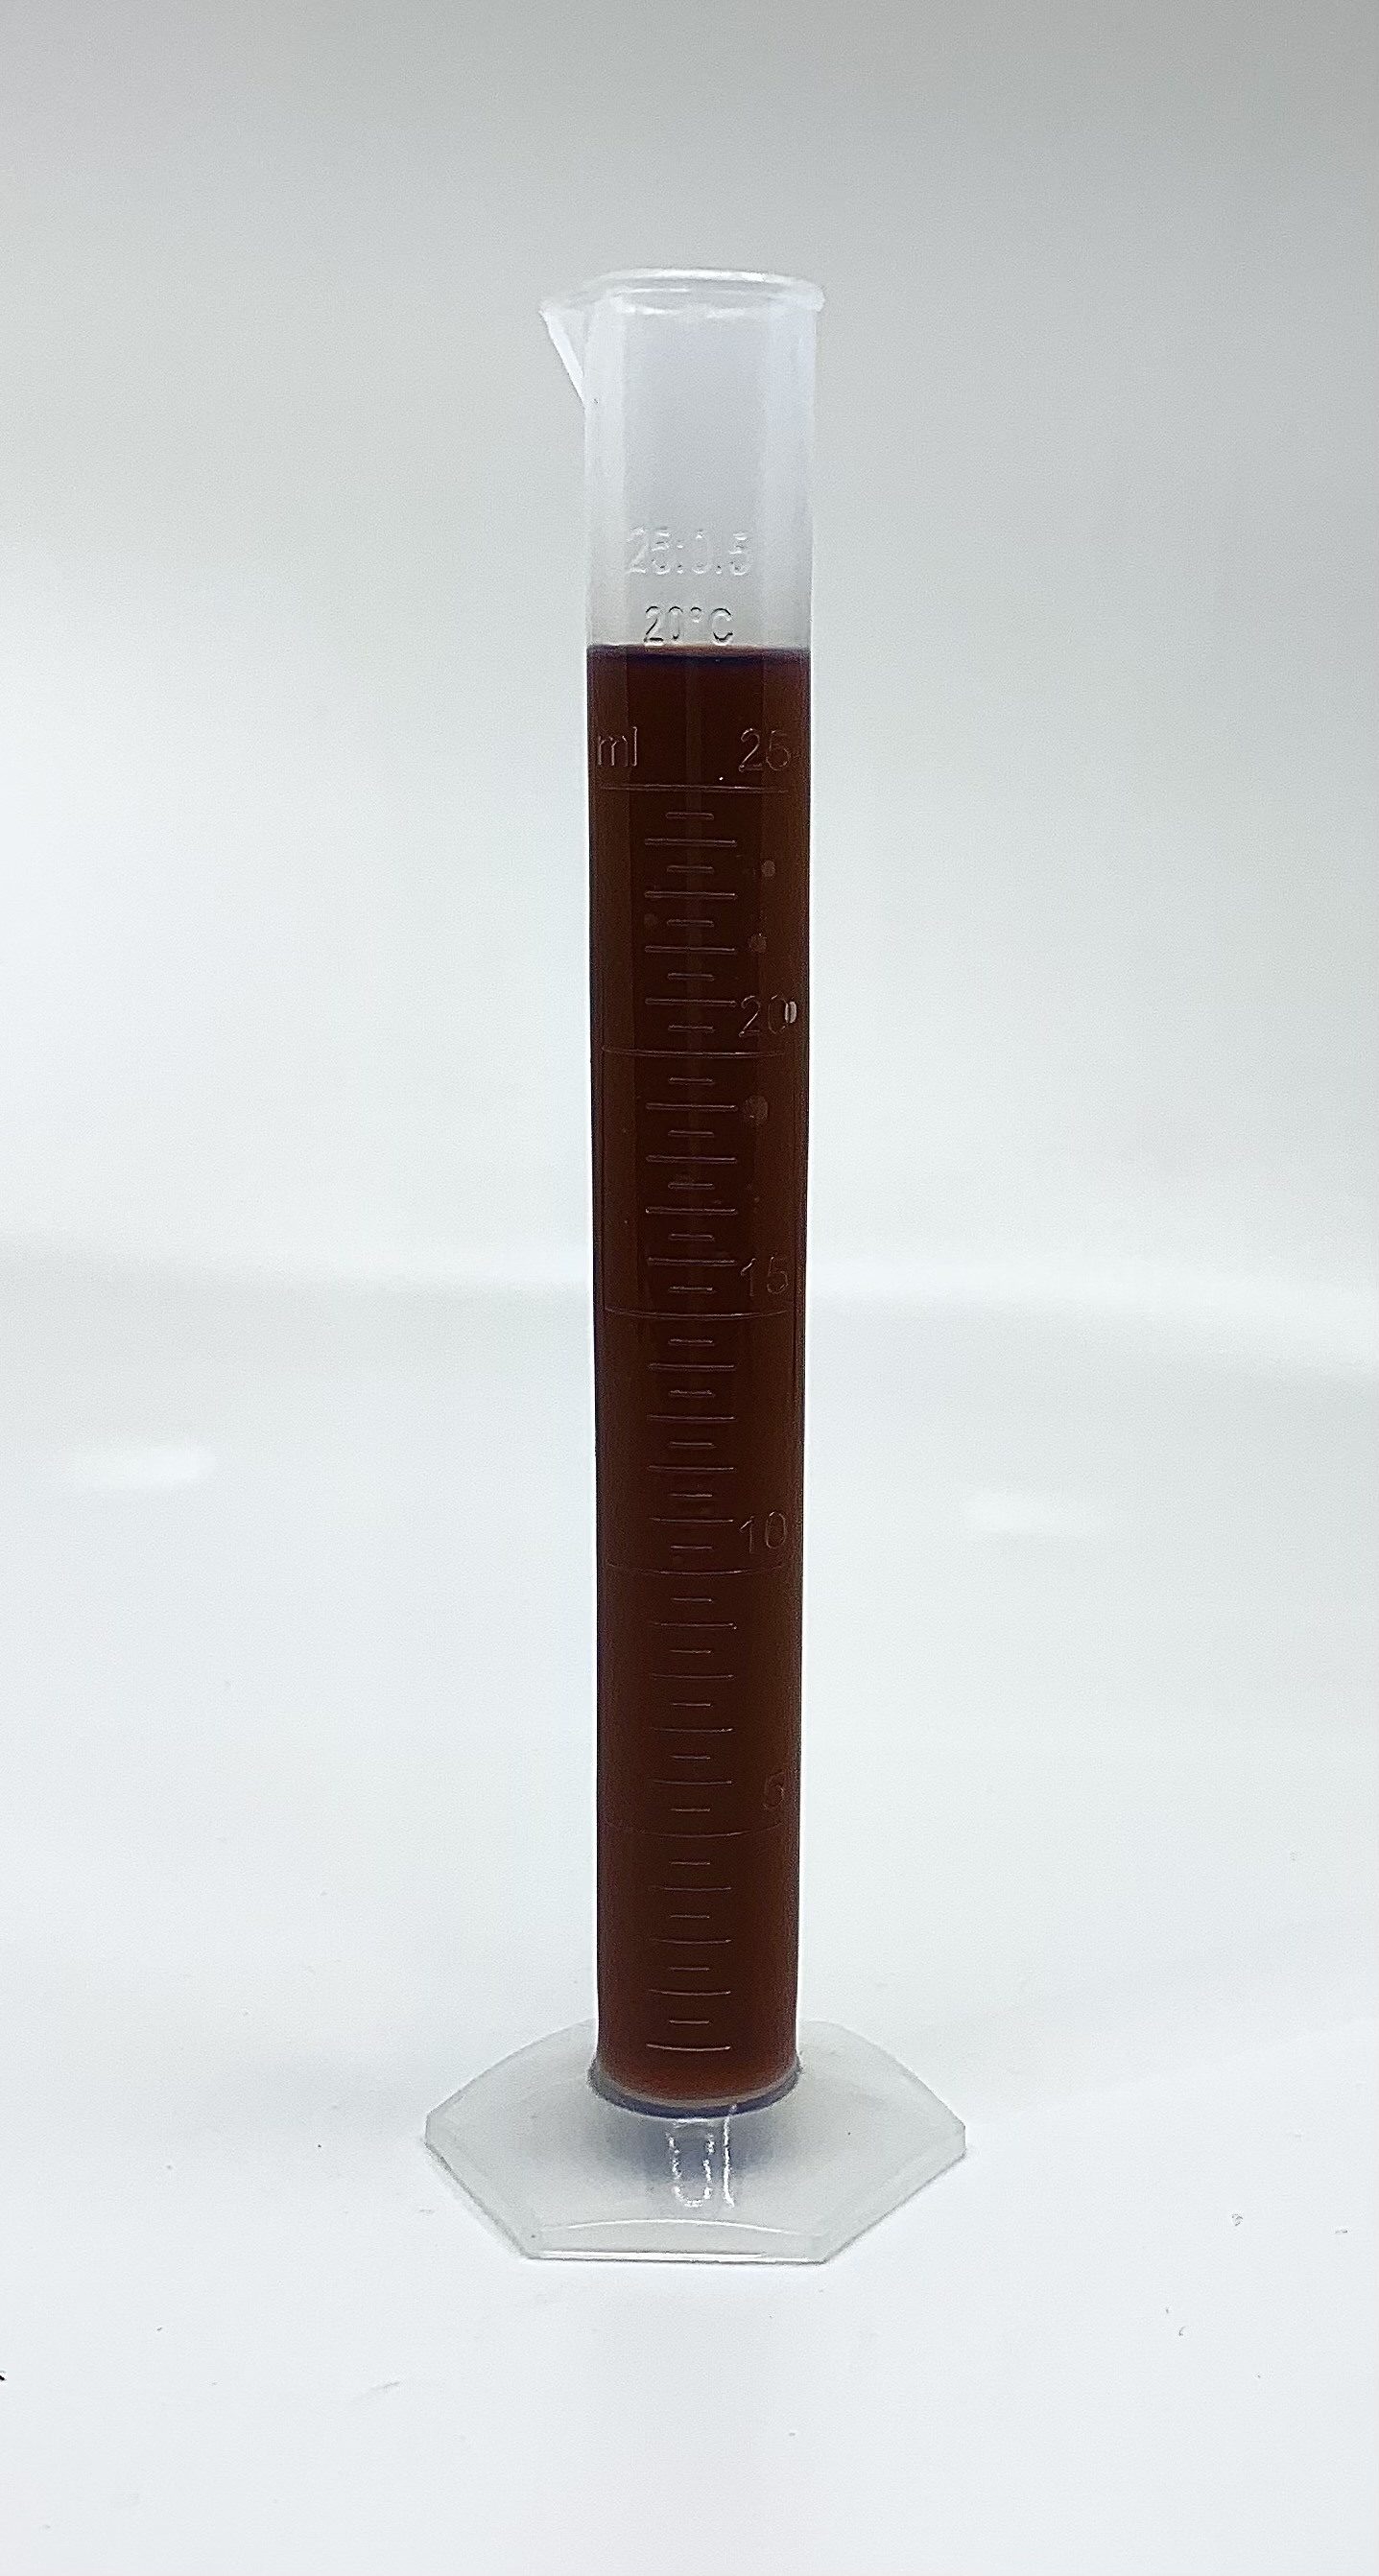 Measuring Cylinder, PP